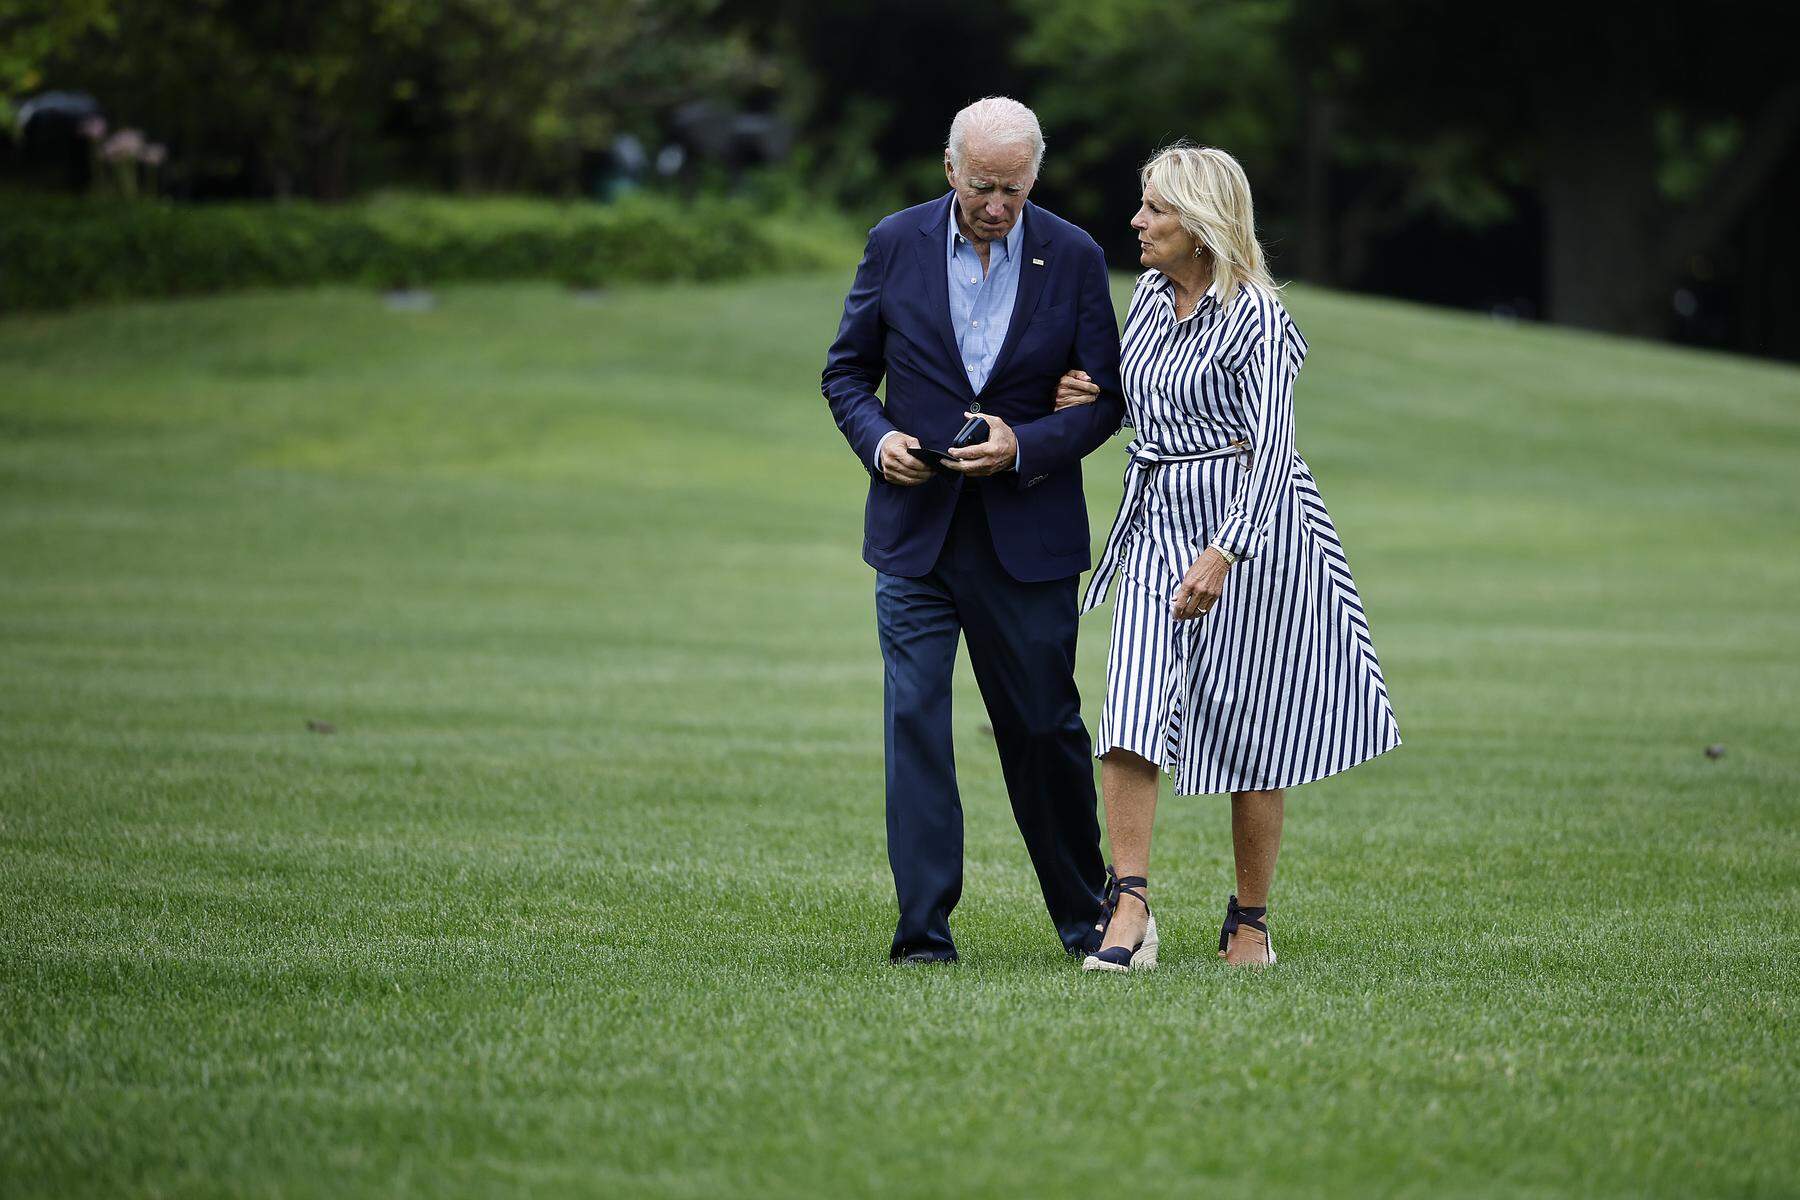 Das Drama Joe Biden: Ein geschwächter Geist gegen eine kranke Geisteshaltung, das darf nicht die Qual der Wahl an der Spitze der freien Welt sein